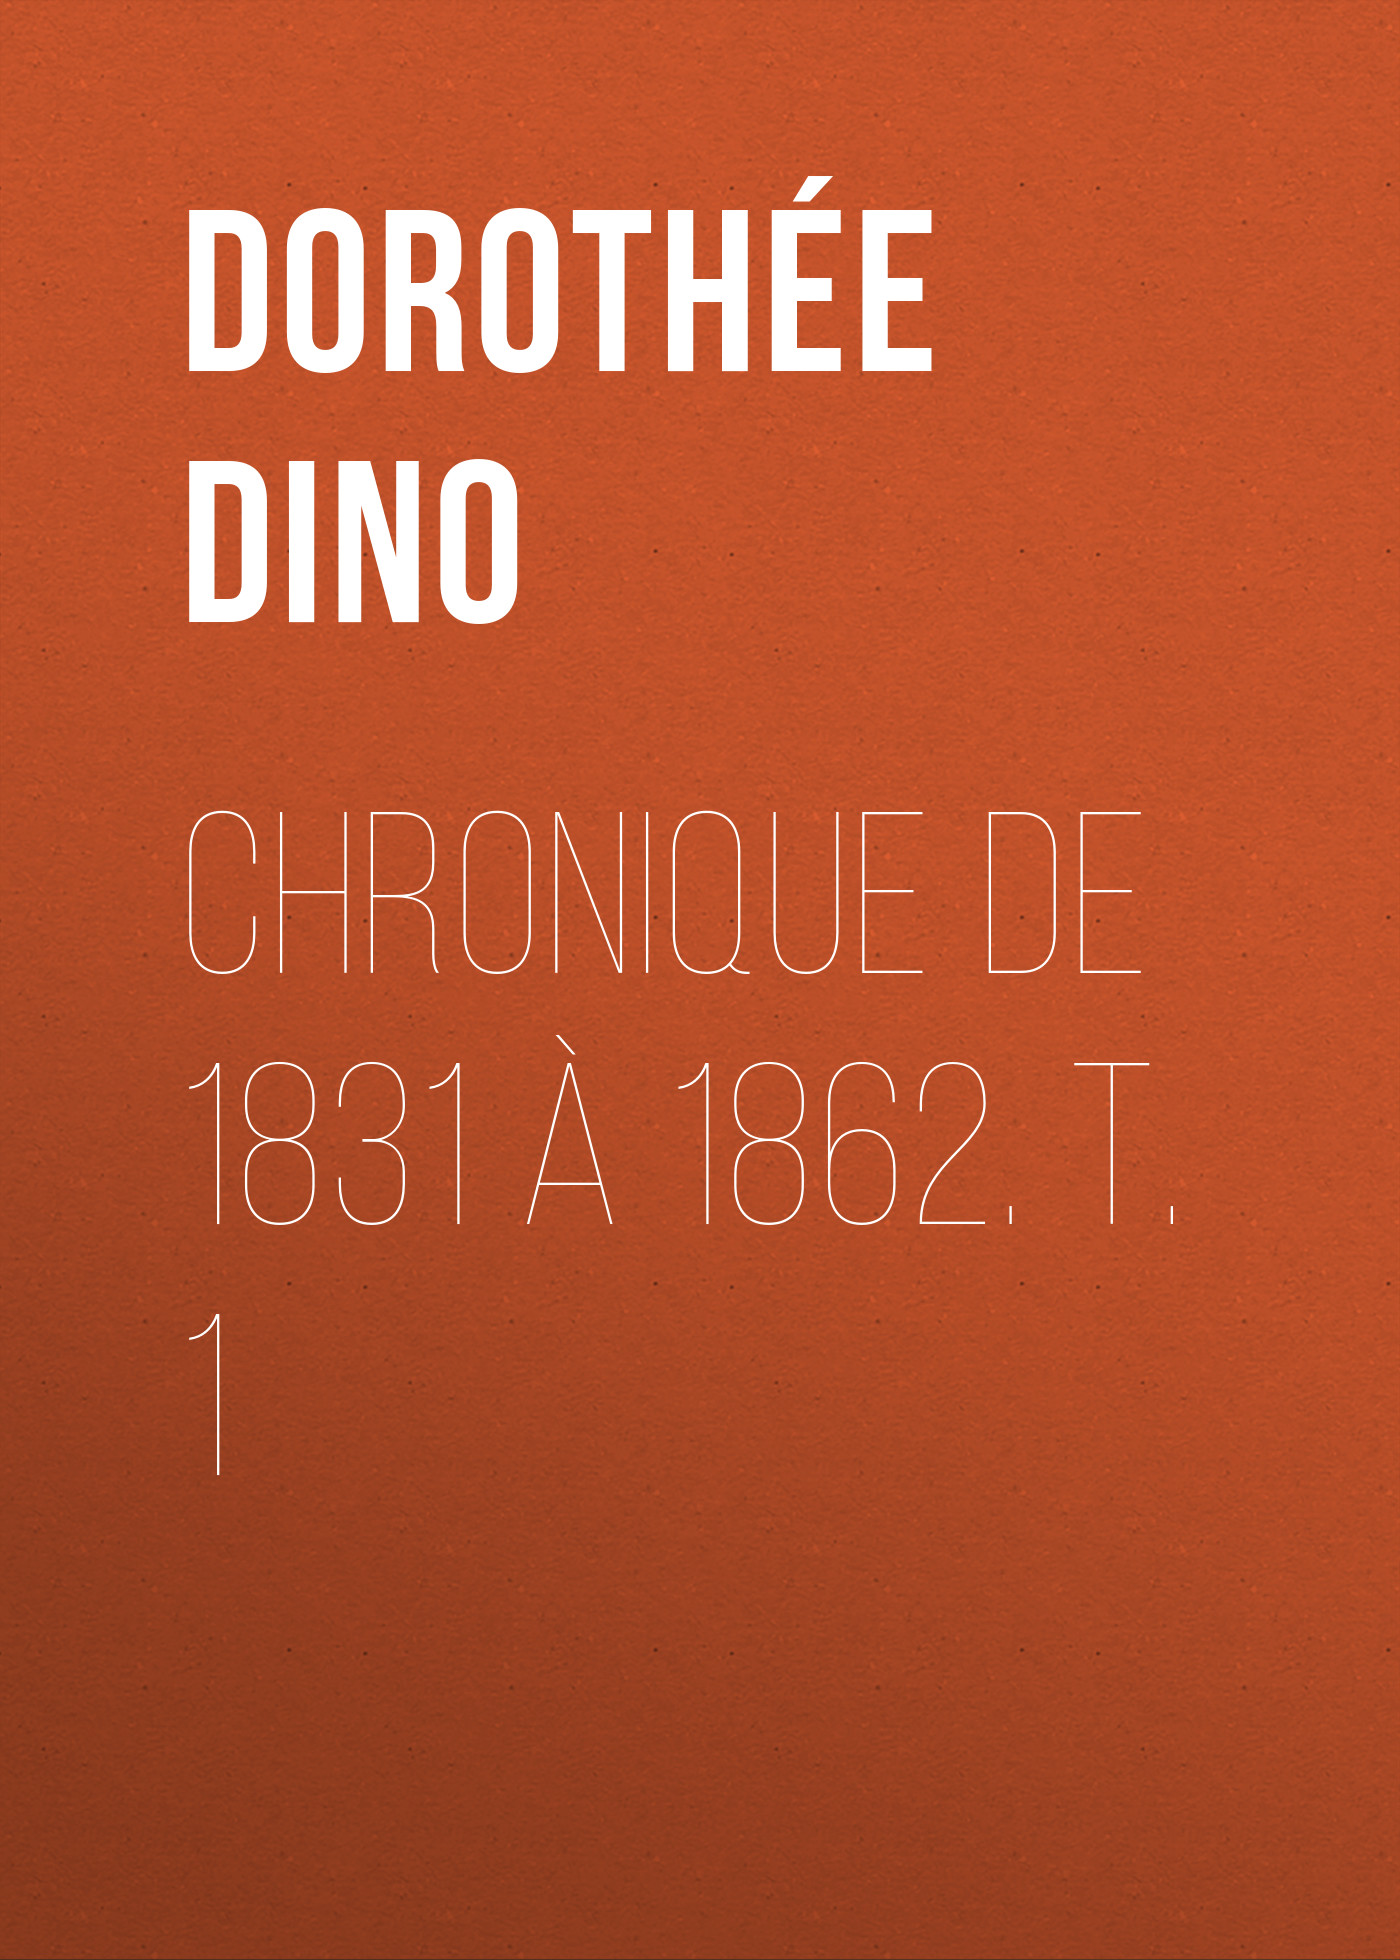 Книга Chronique de 1831 à 1862. T. 1 из серии , созданная Dino Dorothée, может относится к жанру Зарубежная старинная литература, Зарубежная классика. Стоимость электронной книги Chronique de 1831 à 1862. T. 1 с идентификатором 24621637 составляет 0 руб.